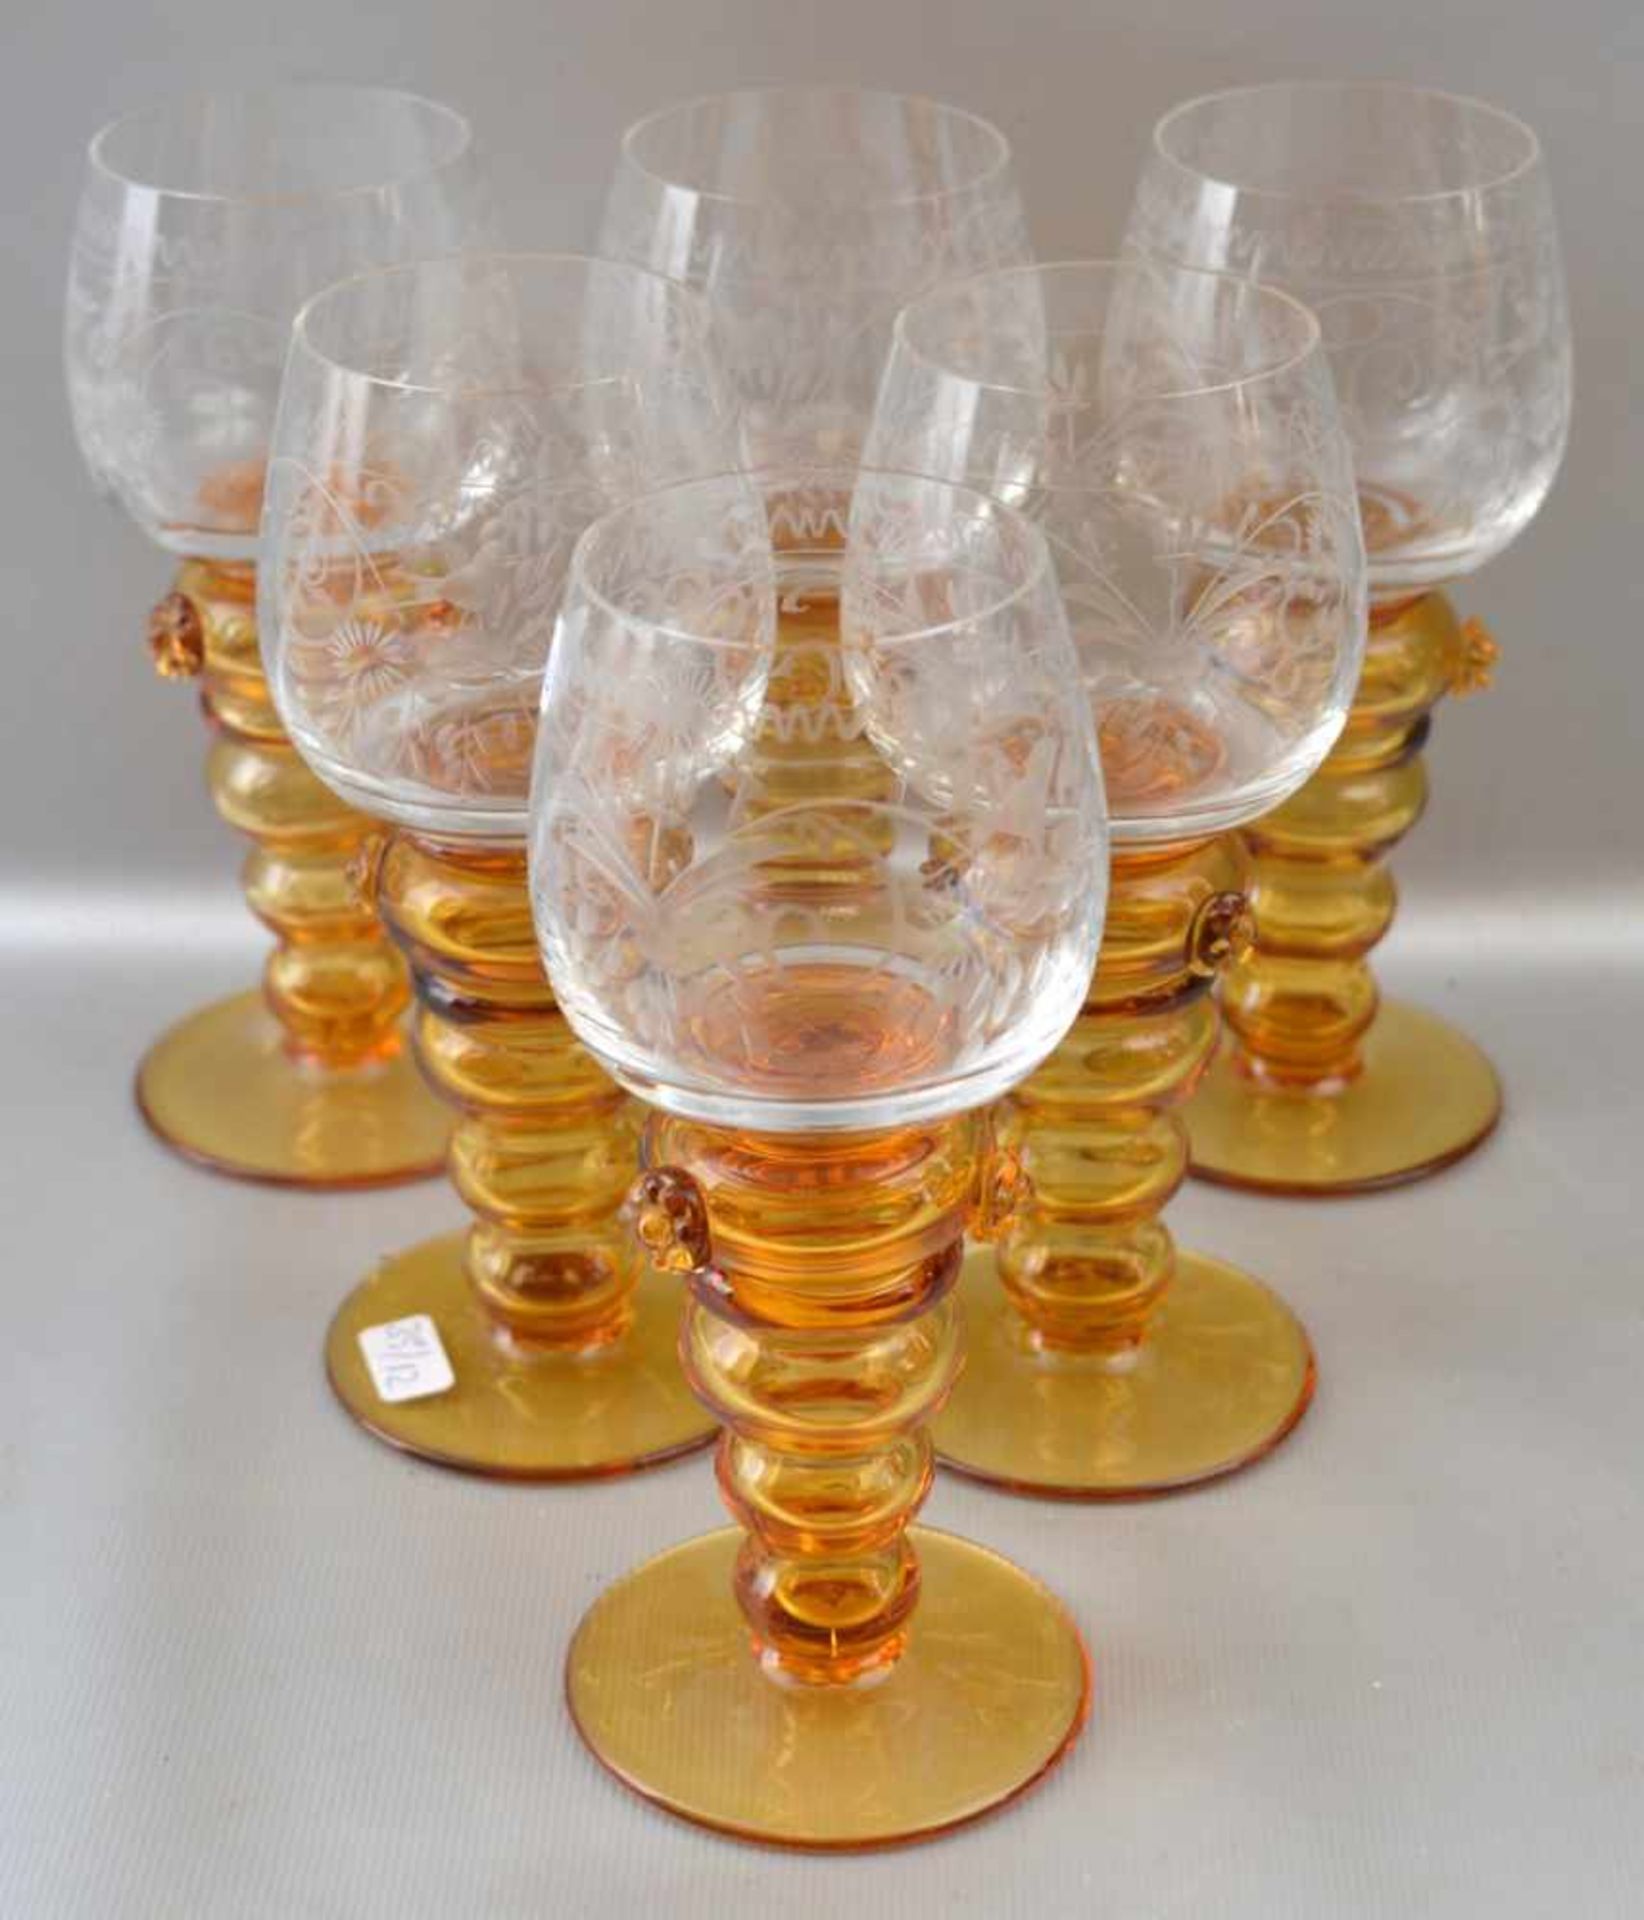 Sechs Weingläser Fuß bernsteinfarbenes Glas, Kelch geschliffen verziert, H 15 cm